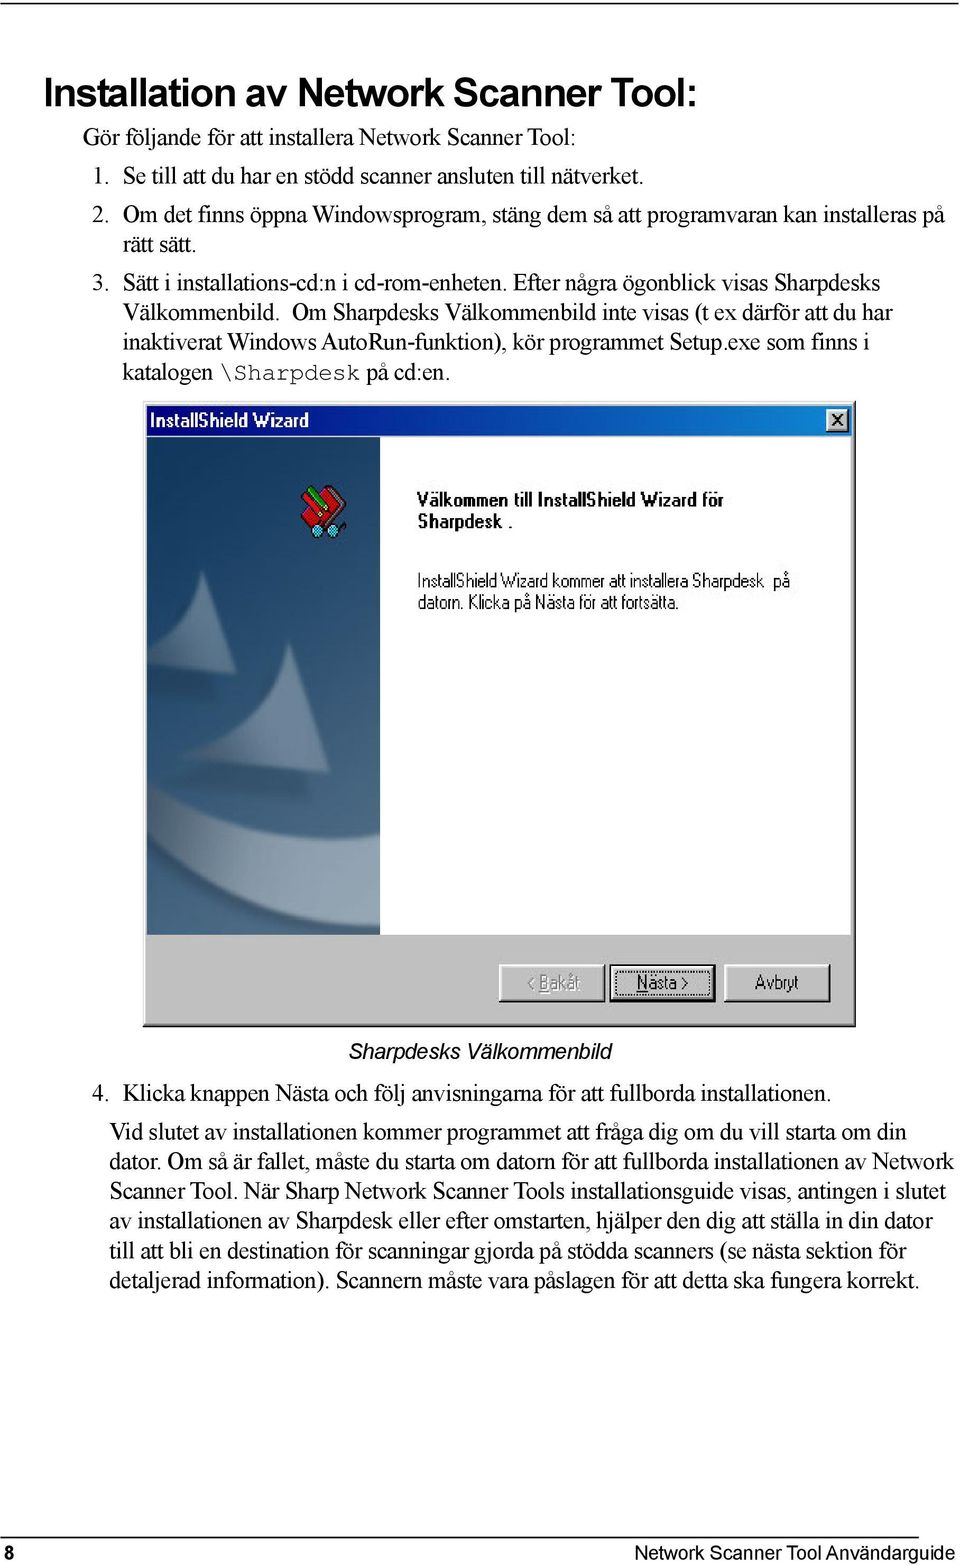 Om Sharpdesks Välkommenbild inte visas (t ex därför att du har inaktiverat Windows AutoRun-funktion), kör programmet Setup.exe som finns i katalogen \Sharpdesk på cd:en. Sharpdesks Välkommenbild 4.